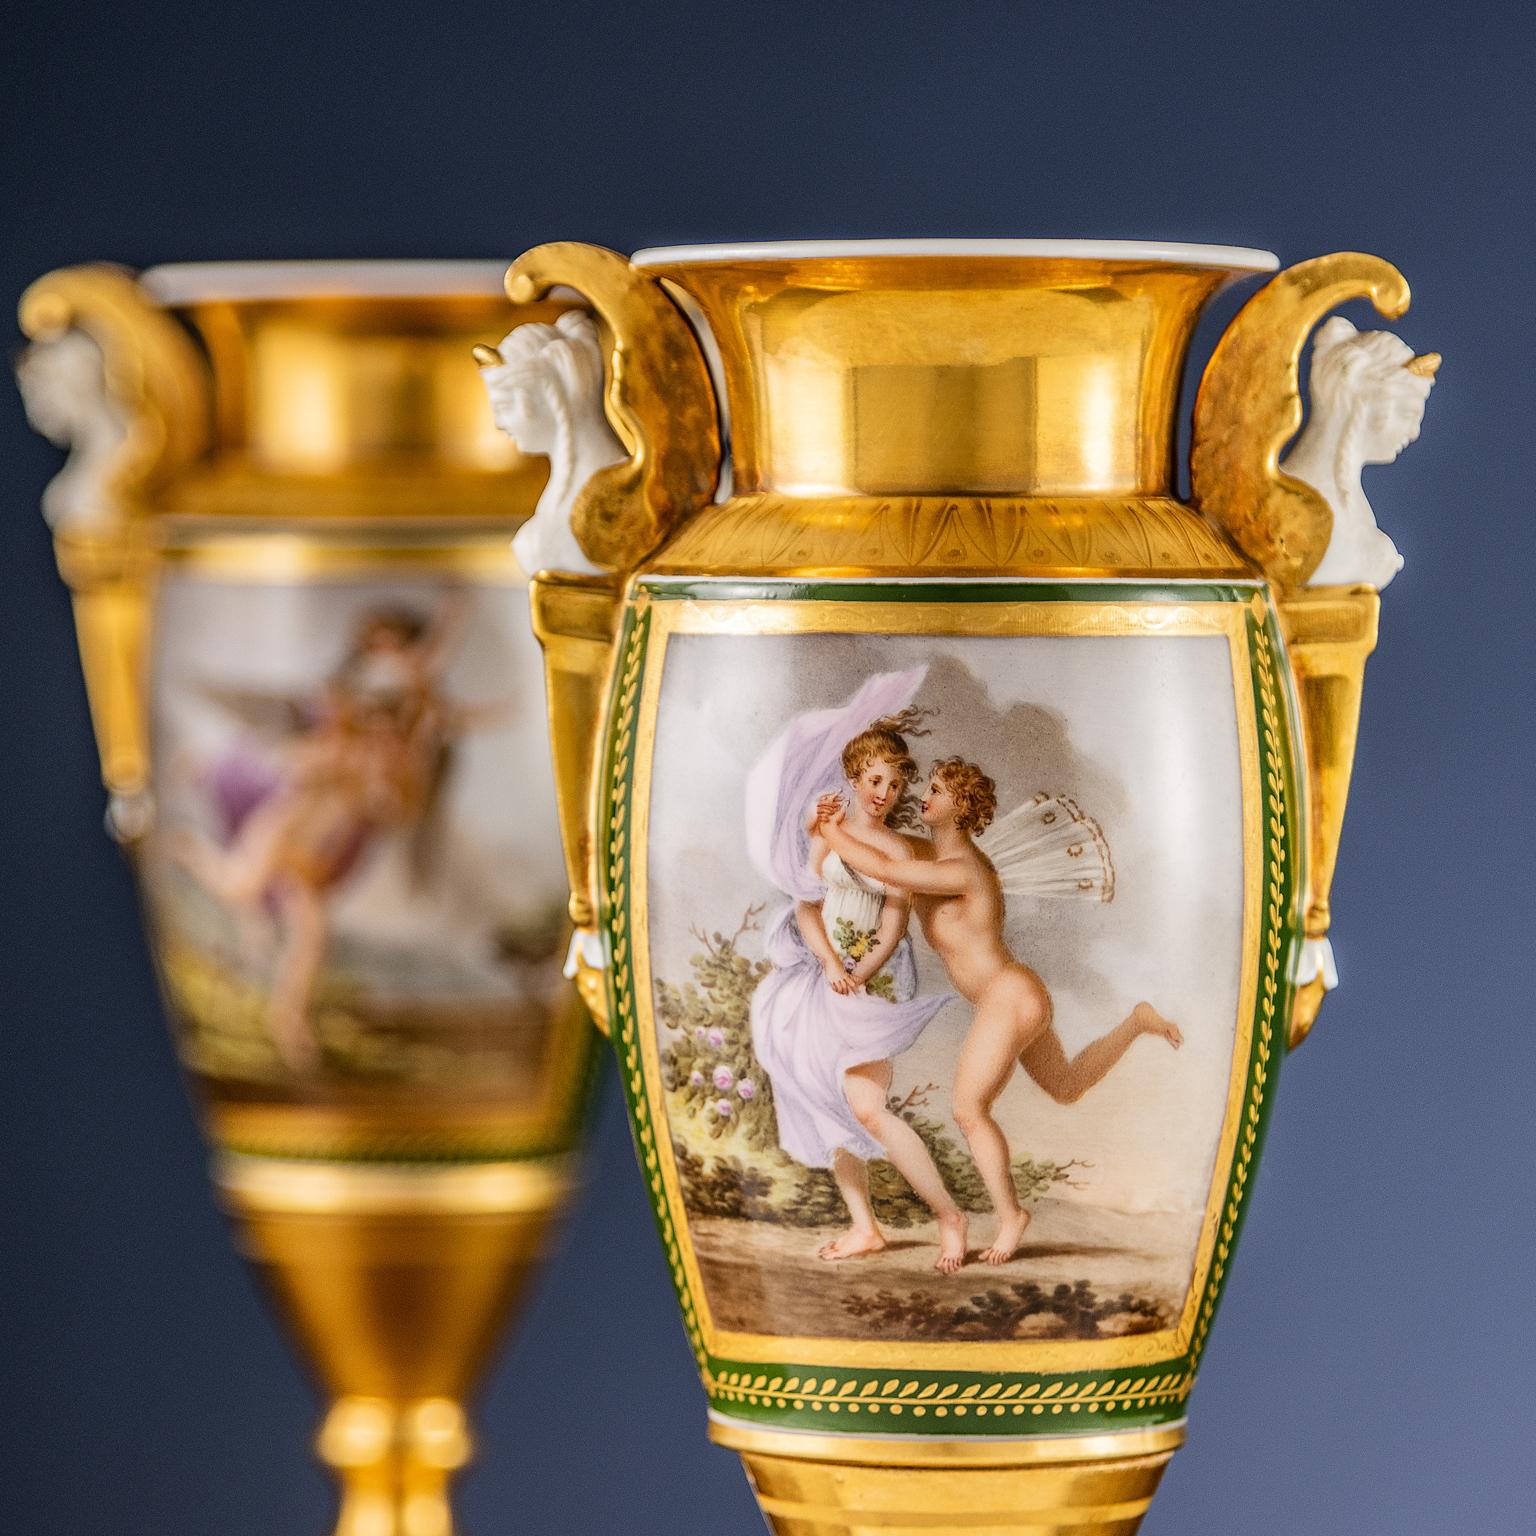 Paar Keramikvasen auf schwarzem belgischem Marmorsockel; mit zwei Henkeln in Form von geflügelten Karyatiden. Die Vasen sind teilweise vergoldet und grün glasiert, mit Motiven im Empire-Stil, wie z. B. griechischen Blattmotiven und späteren